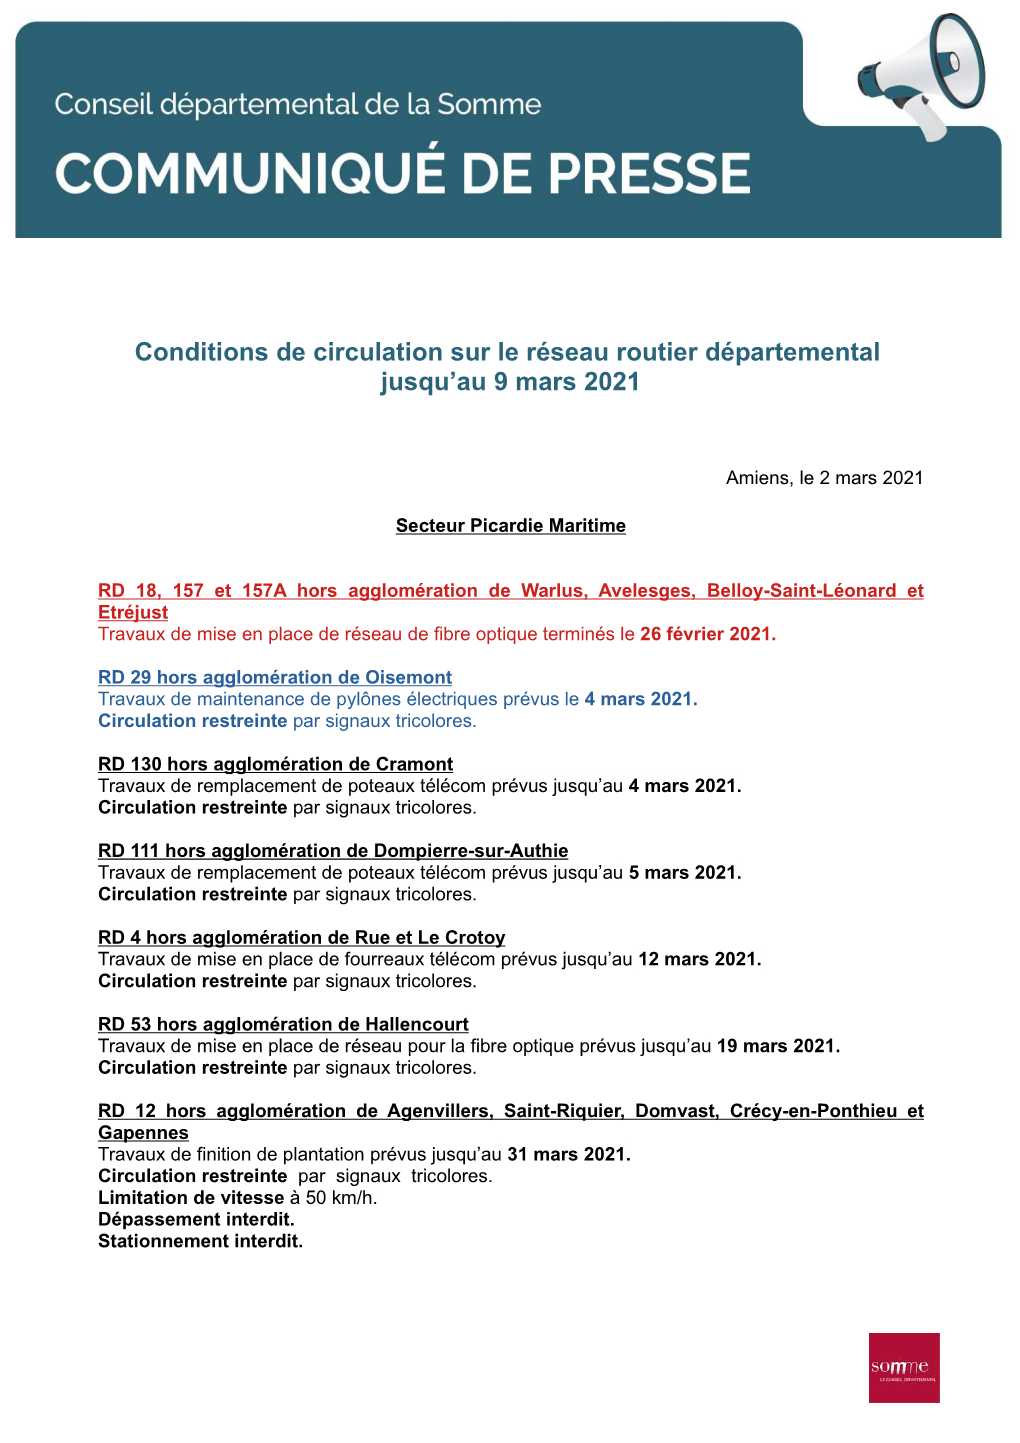 Conditions De Circulation Sur Le Réseau Routier Départemental Jusqu'au 9